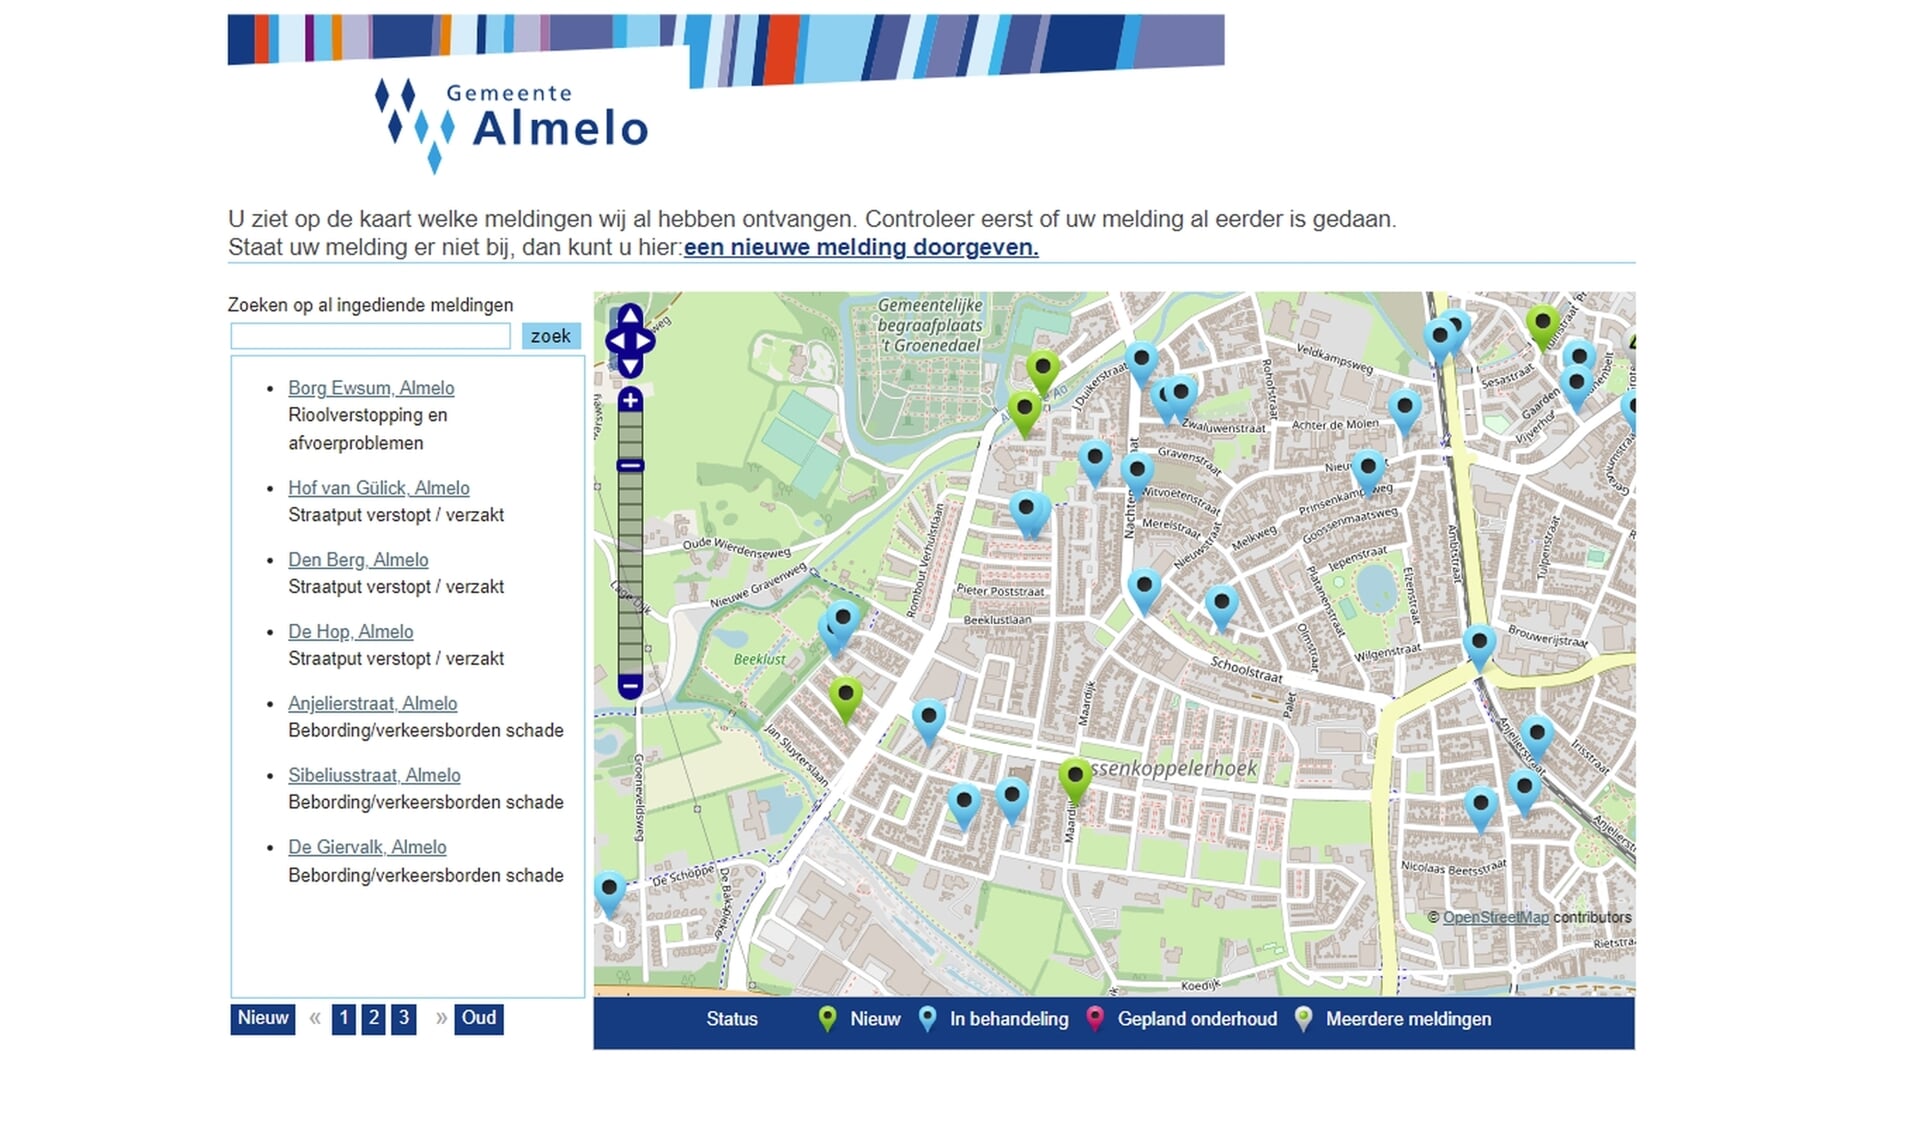 Volgens de rekenkamer heeft de gemeente Almelo de digitale dienstverlening aardig op orde.